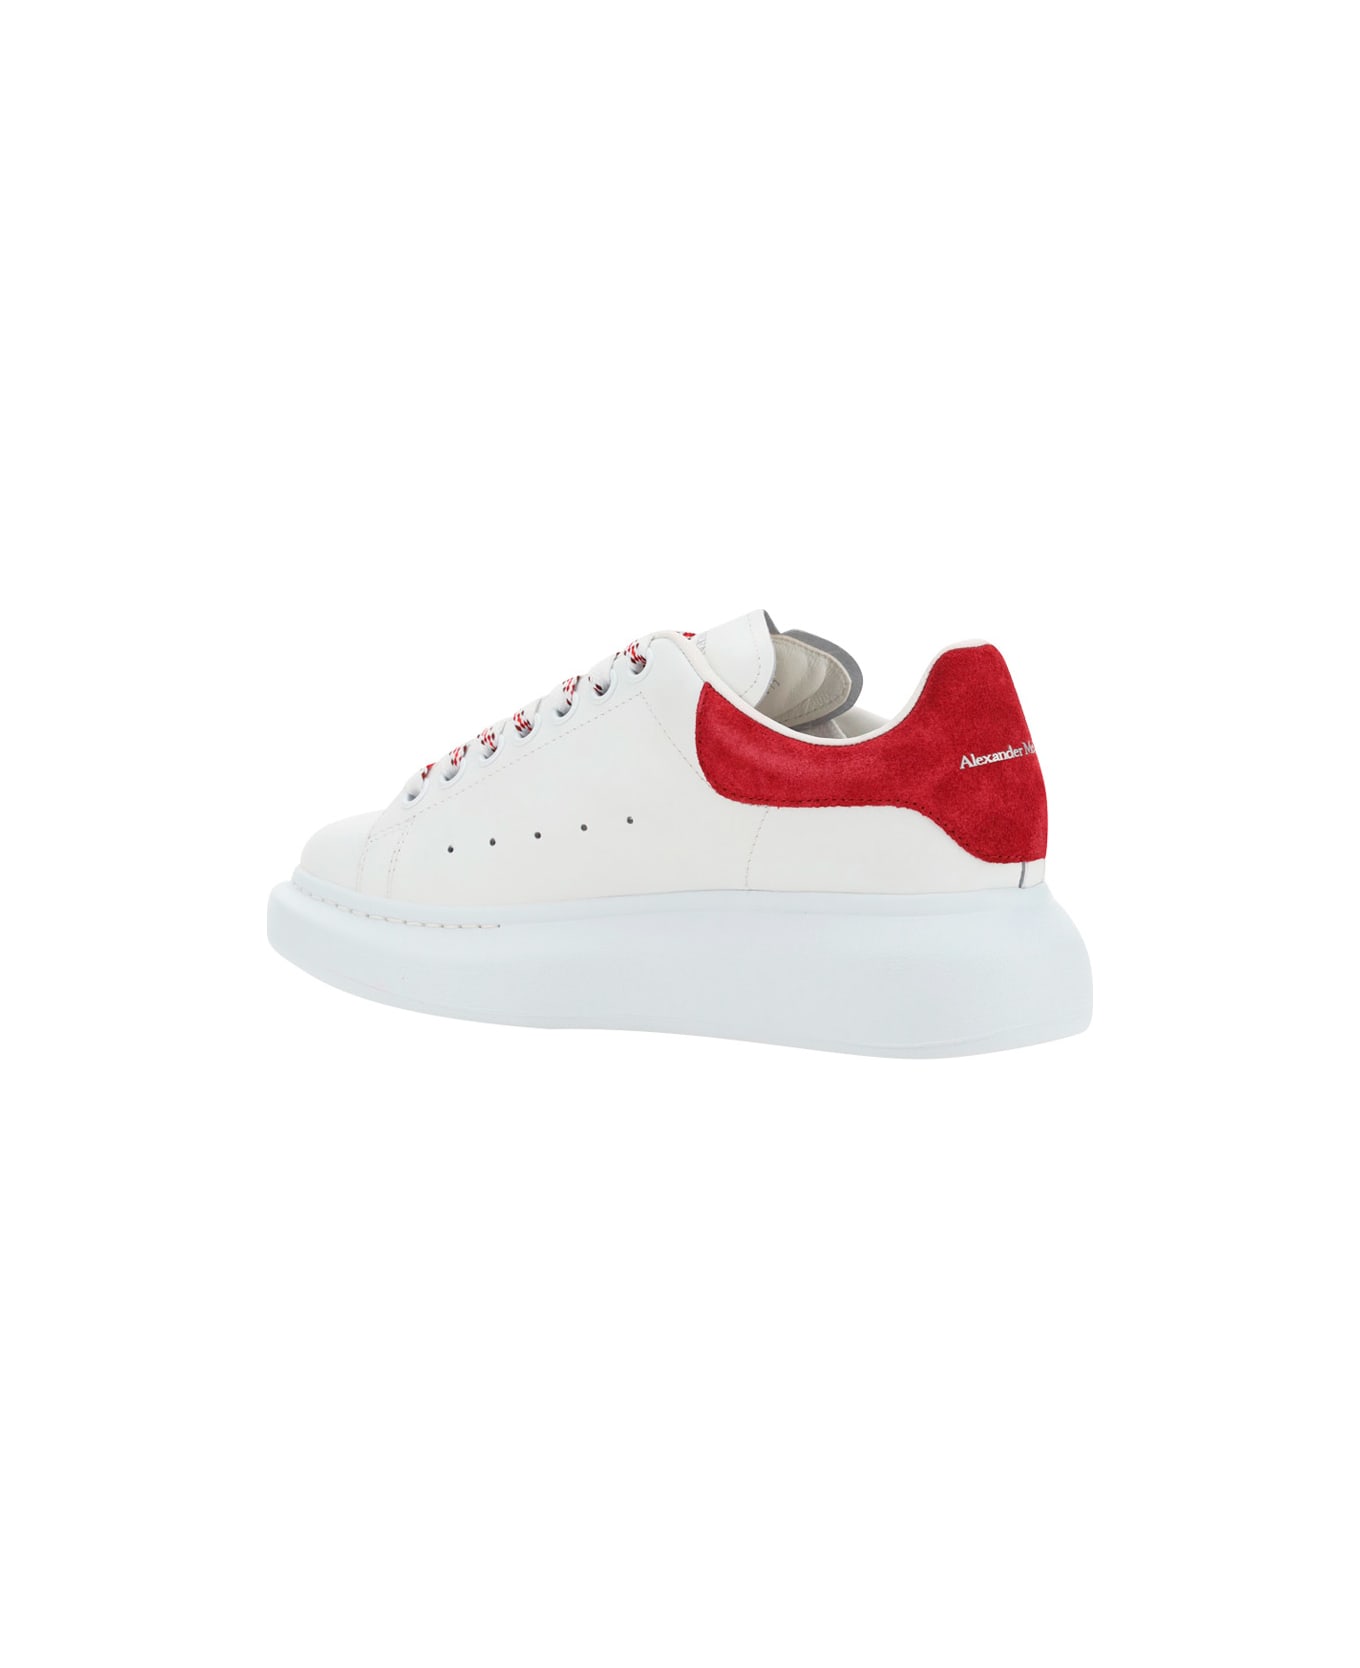 Alexander McQueen Oversized Sneakers In Calfskin - White/cherry